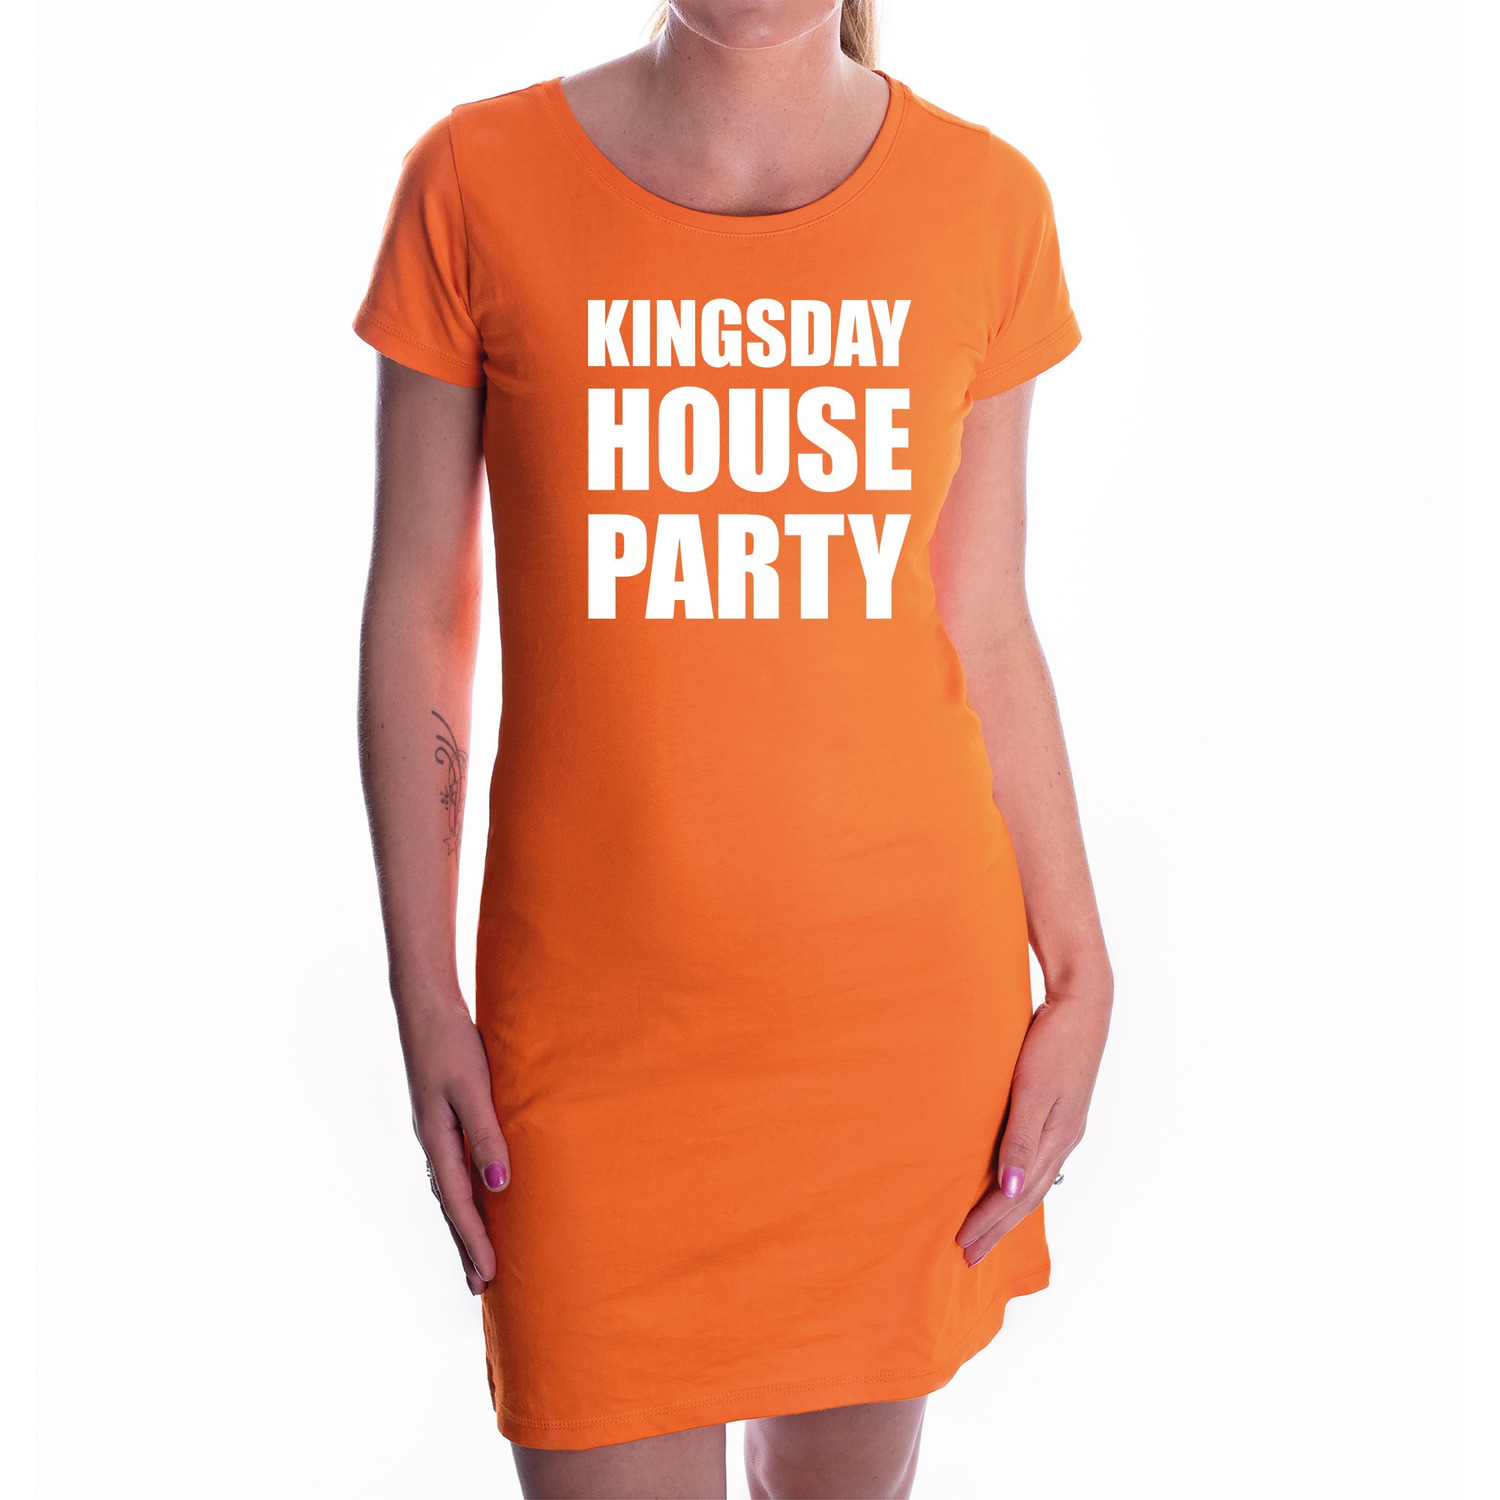 Koningsdag jurk oranje Kingsday house party voor dames